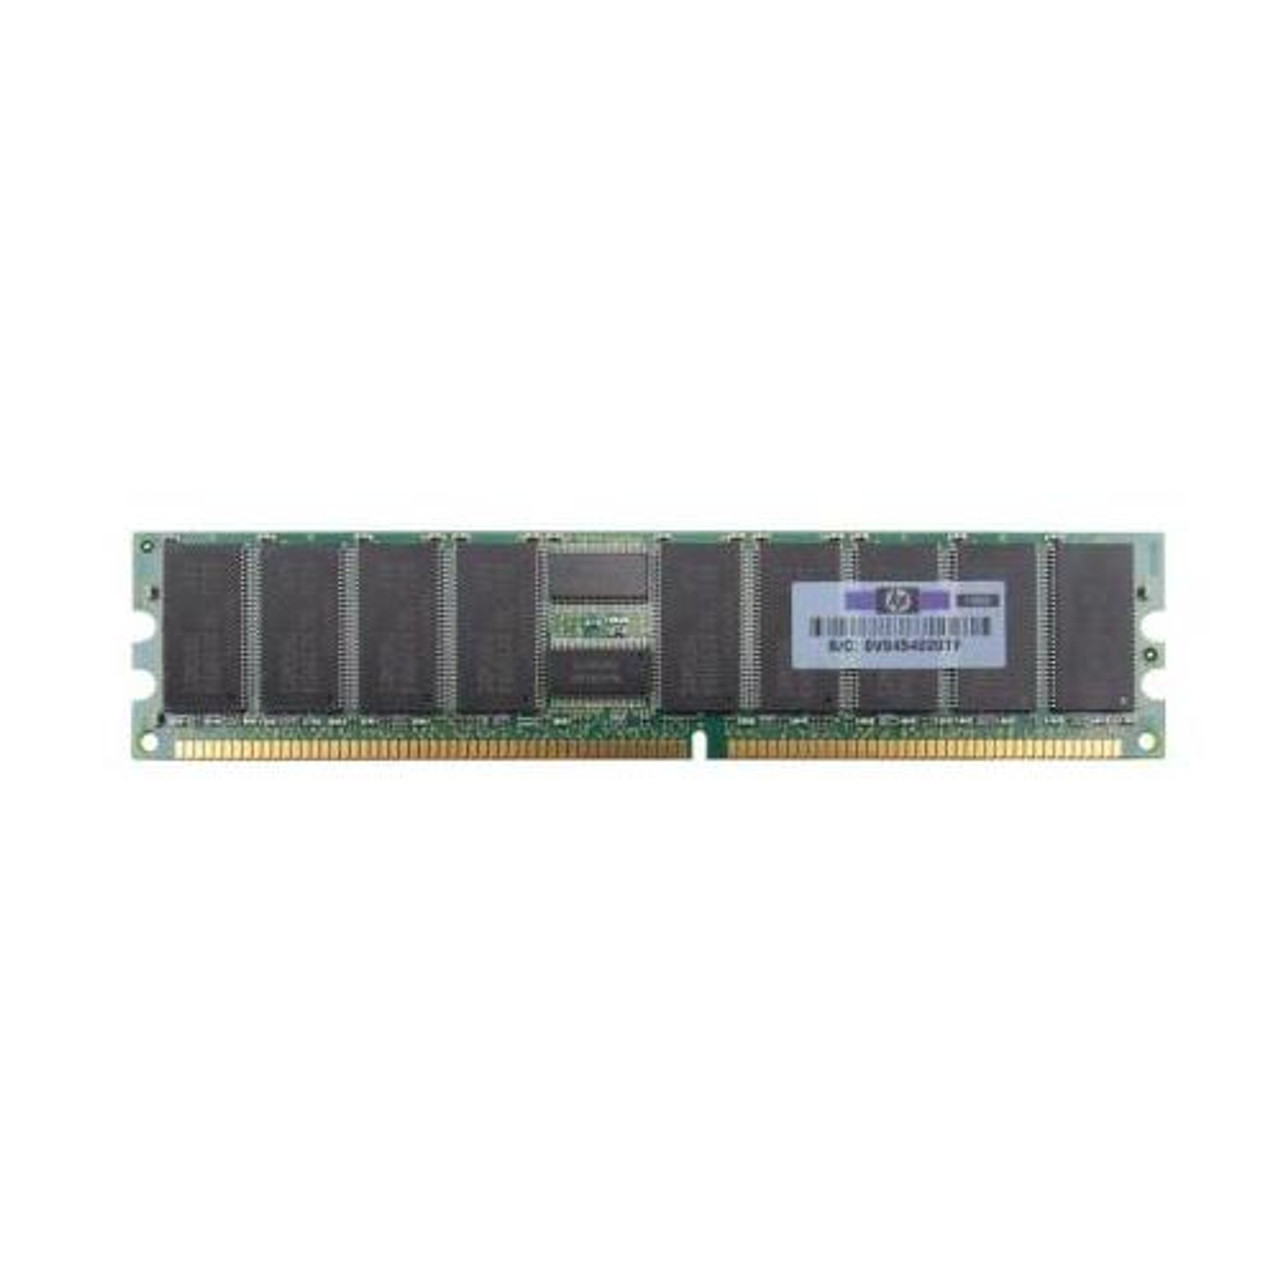 202170-B21 HP 1GB Kit (4 X 256MB) PC1600 DDR-200MHz Registered ECC CL2 184-Pin DIMM 2.5V Memory